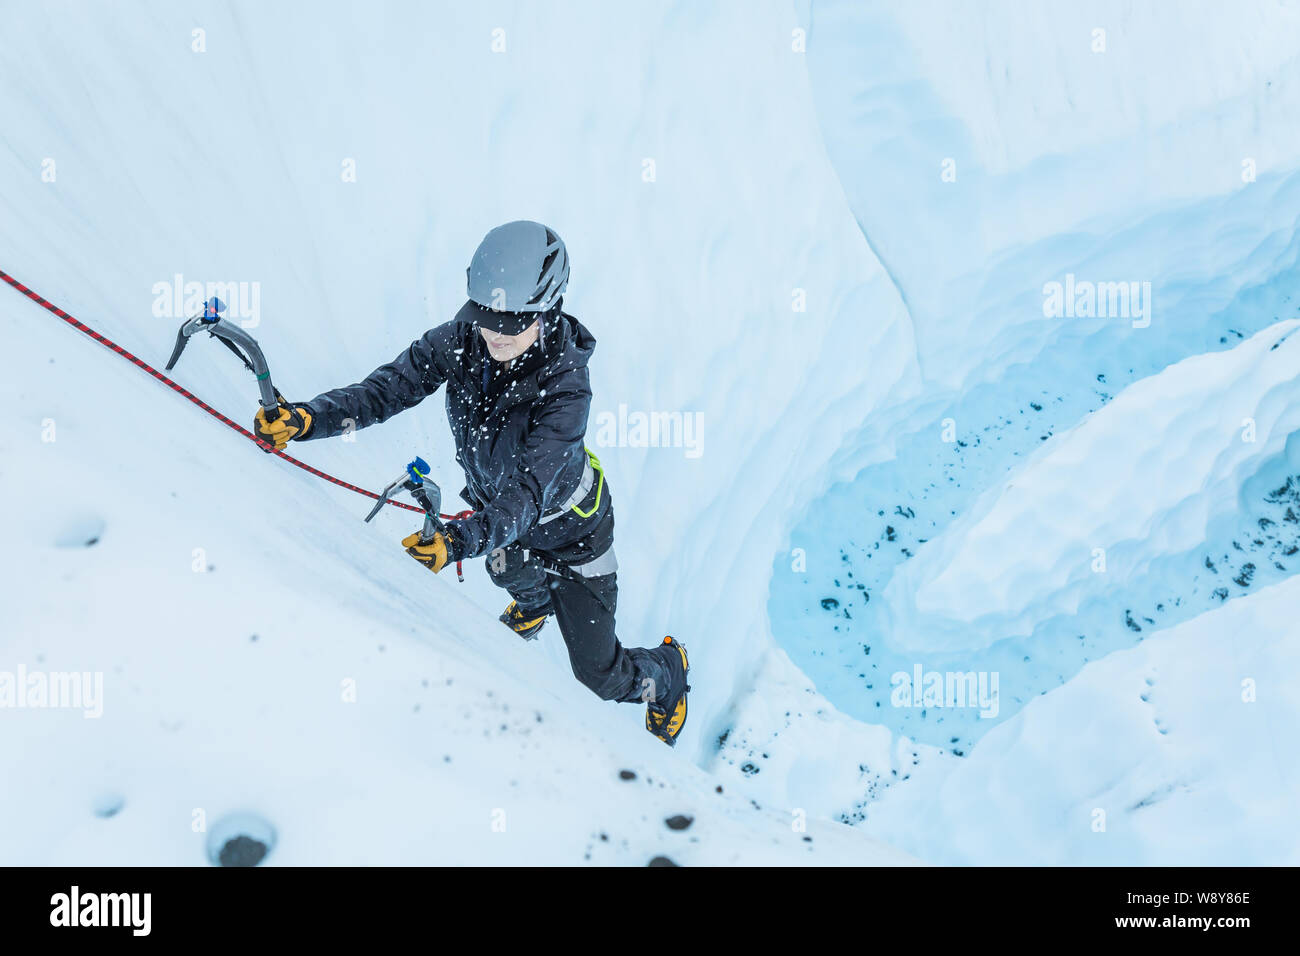 La donna si schiaccia un utensile nel ghiacciaio come lei si arrampica su un passo ripido su un fiume di origine glaciale. Il ghiaccio esplode in piccoli pezzi quando lo strumento lo colpisce. Foto Stock